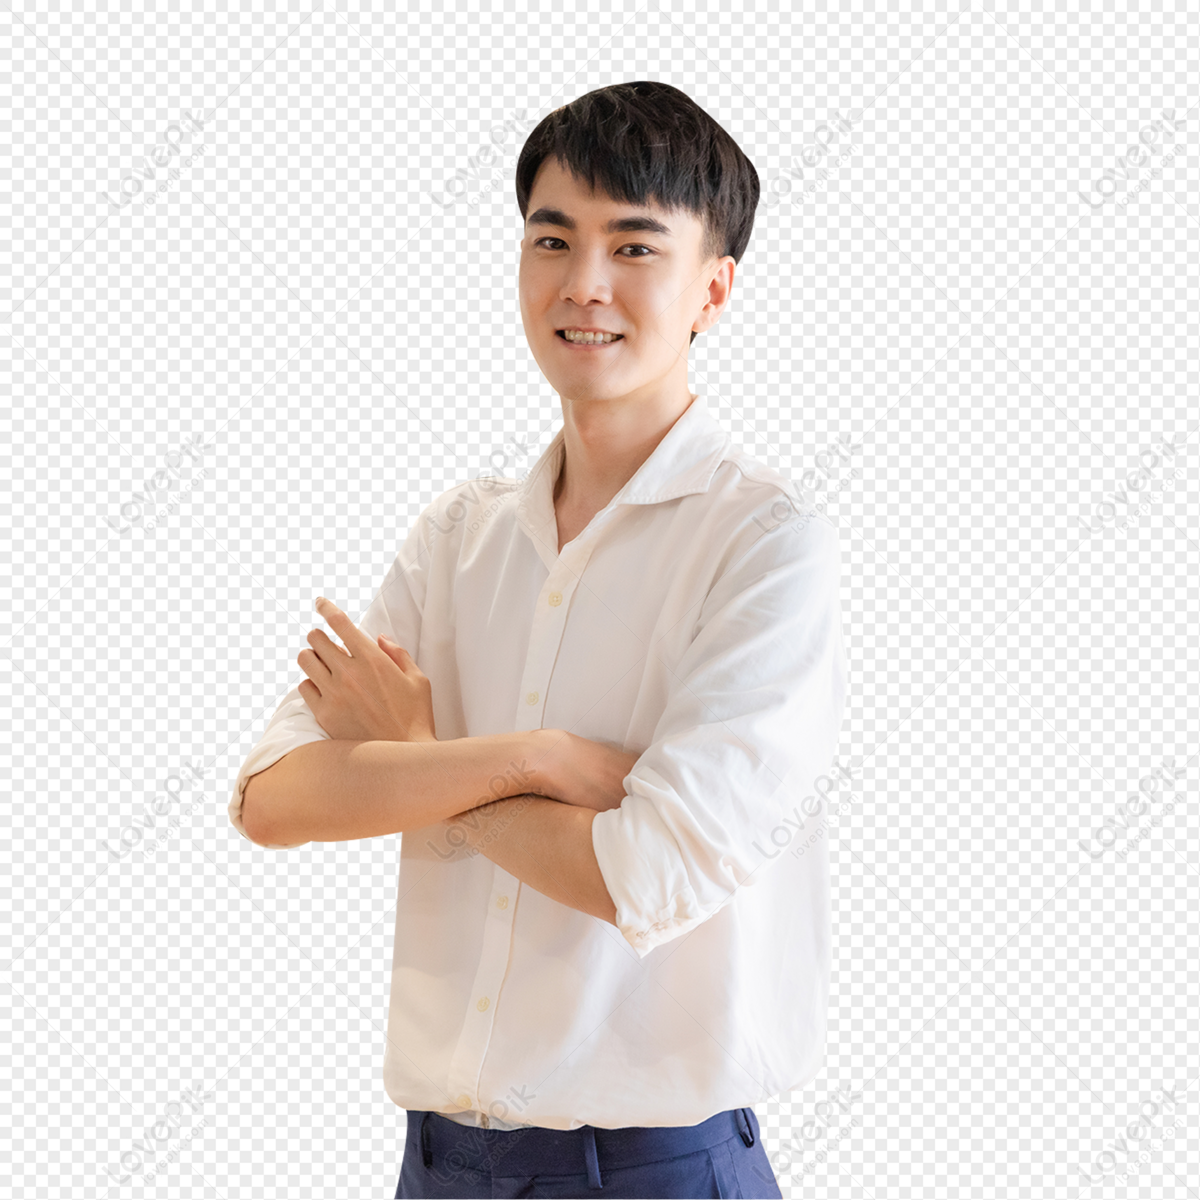 Young Asian man png transparent